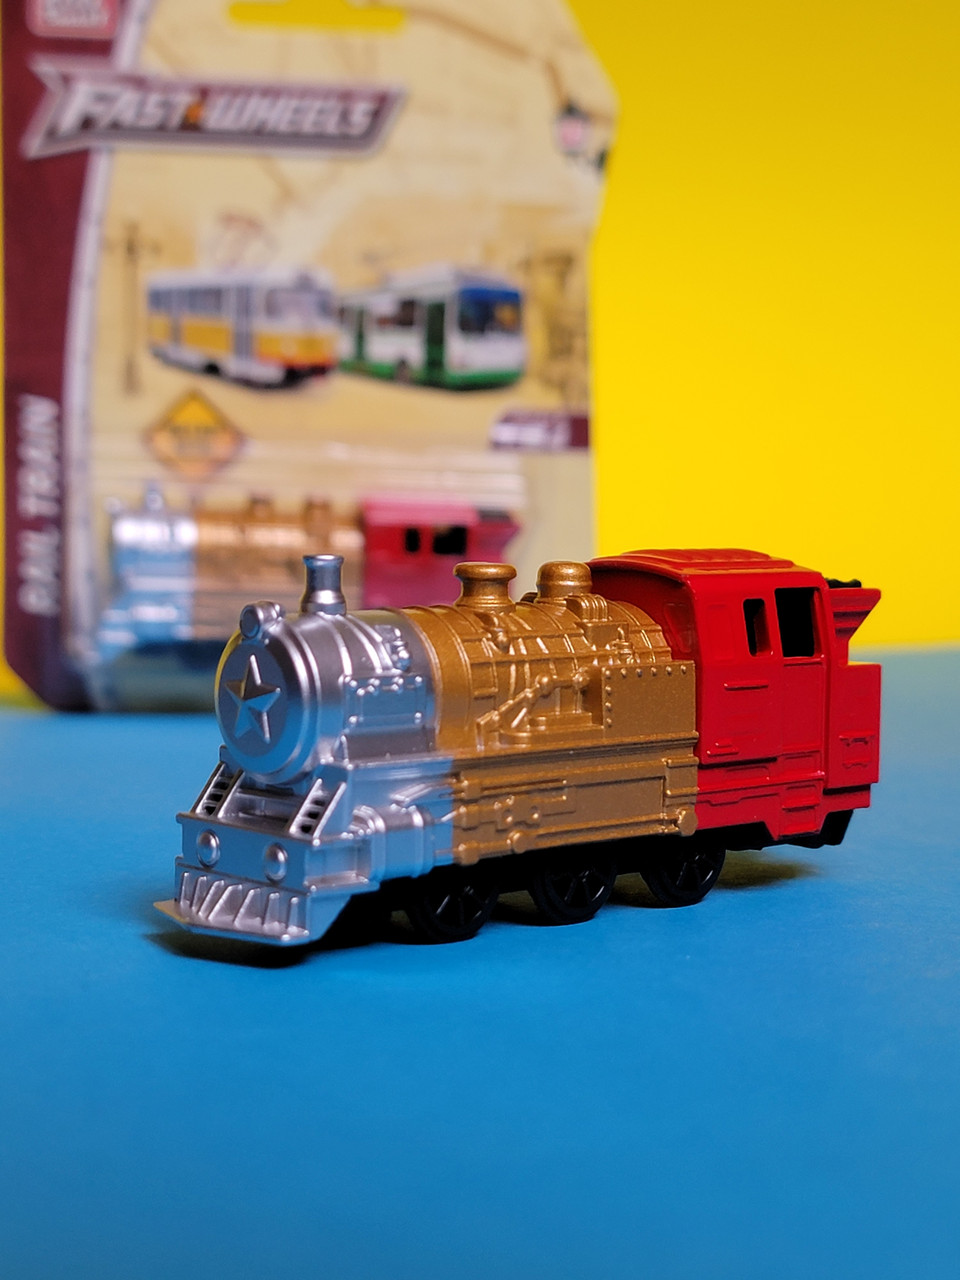 Іграшка Паровоз Fast wheels металева 1:64 модель, дитячий паровоз локомотив